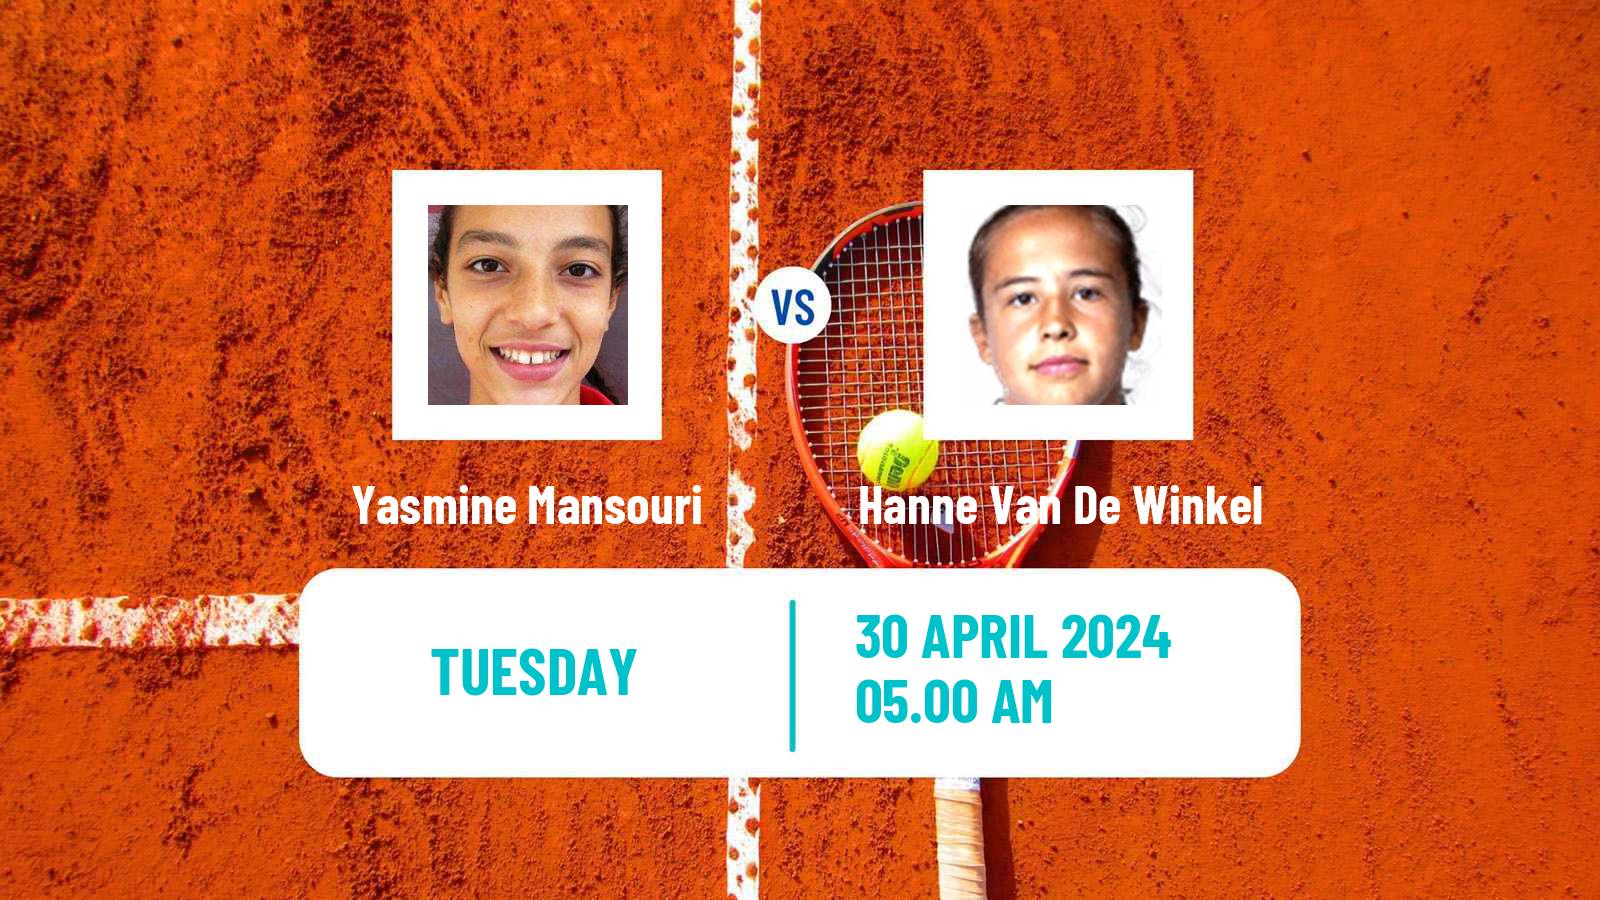 Tennis ITF W35 Hammamet 7 Women Yasmine Mansouri - Hanne Van De Winkel